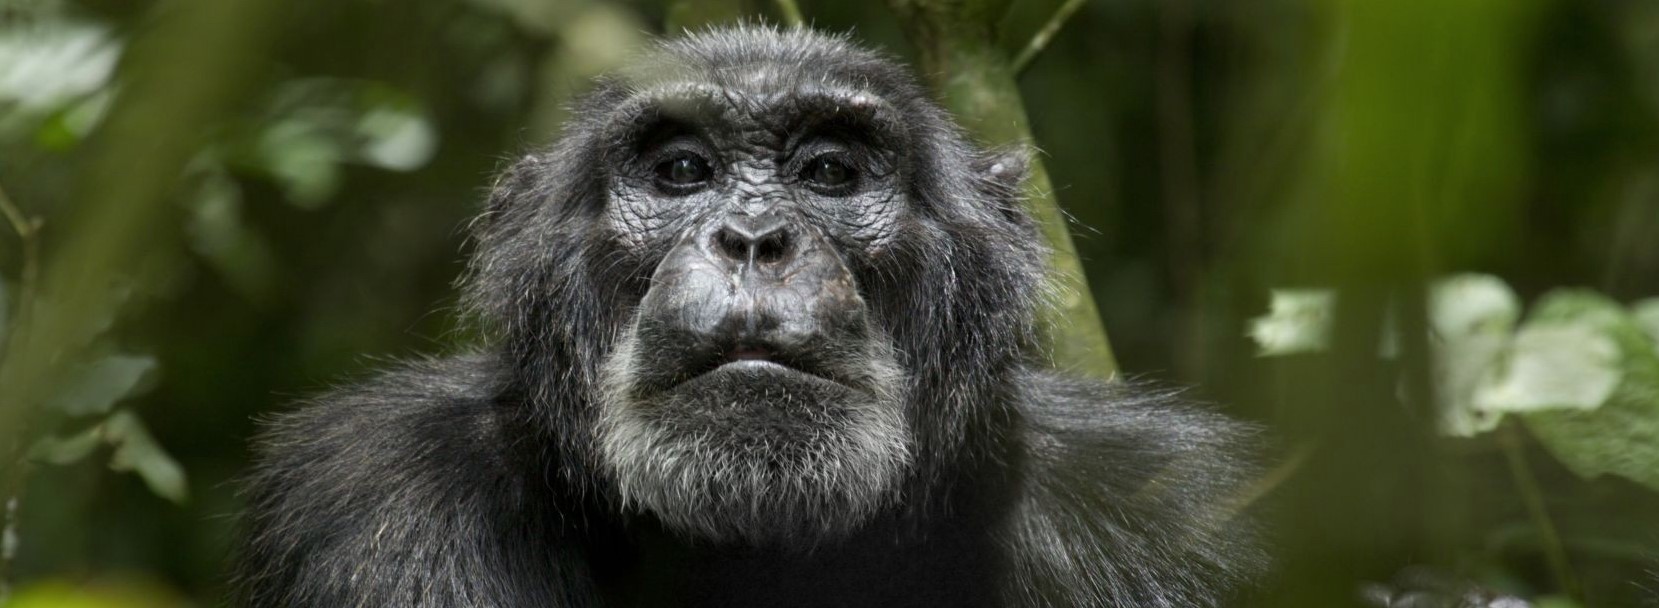 Tag: uganda gorilla safaris